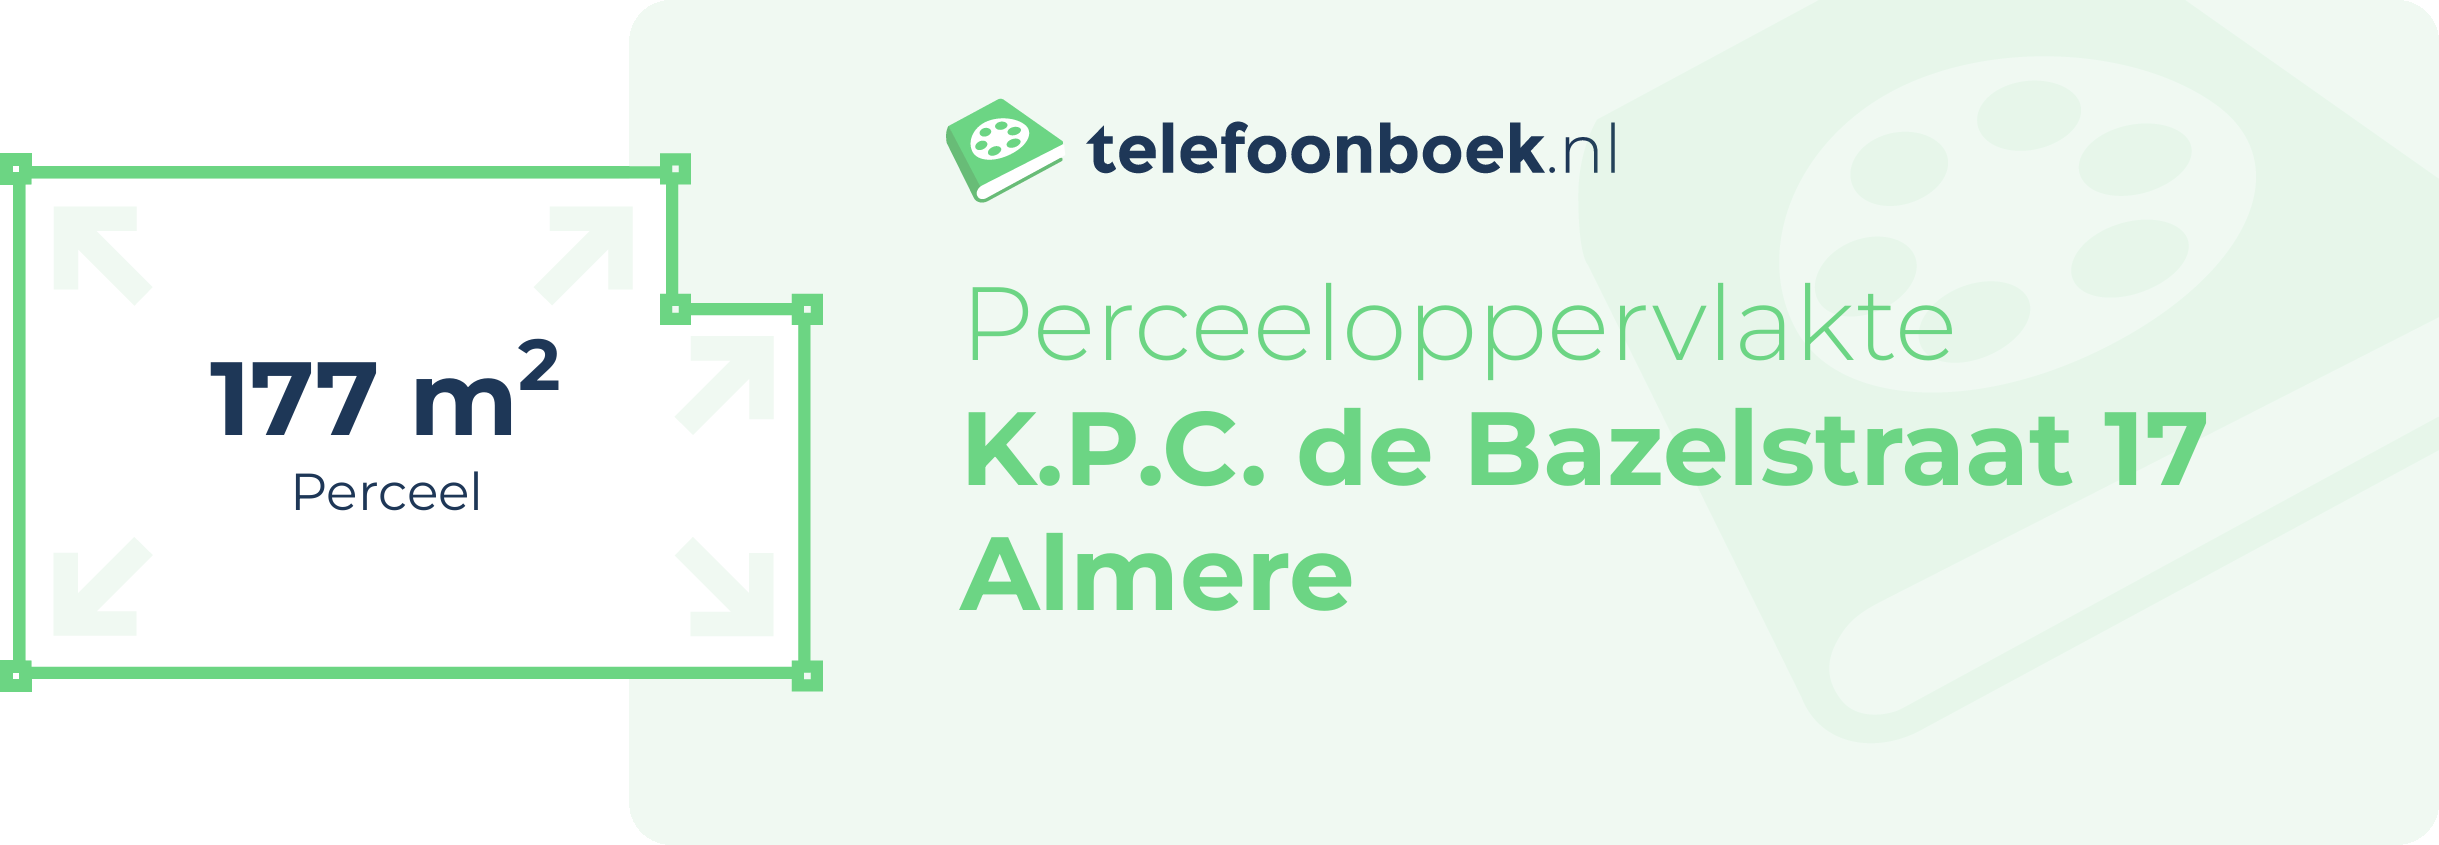 Perceeloppervlakte K.P.C. De Bazelstraat 17 Almere